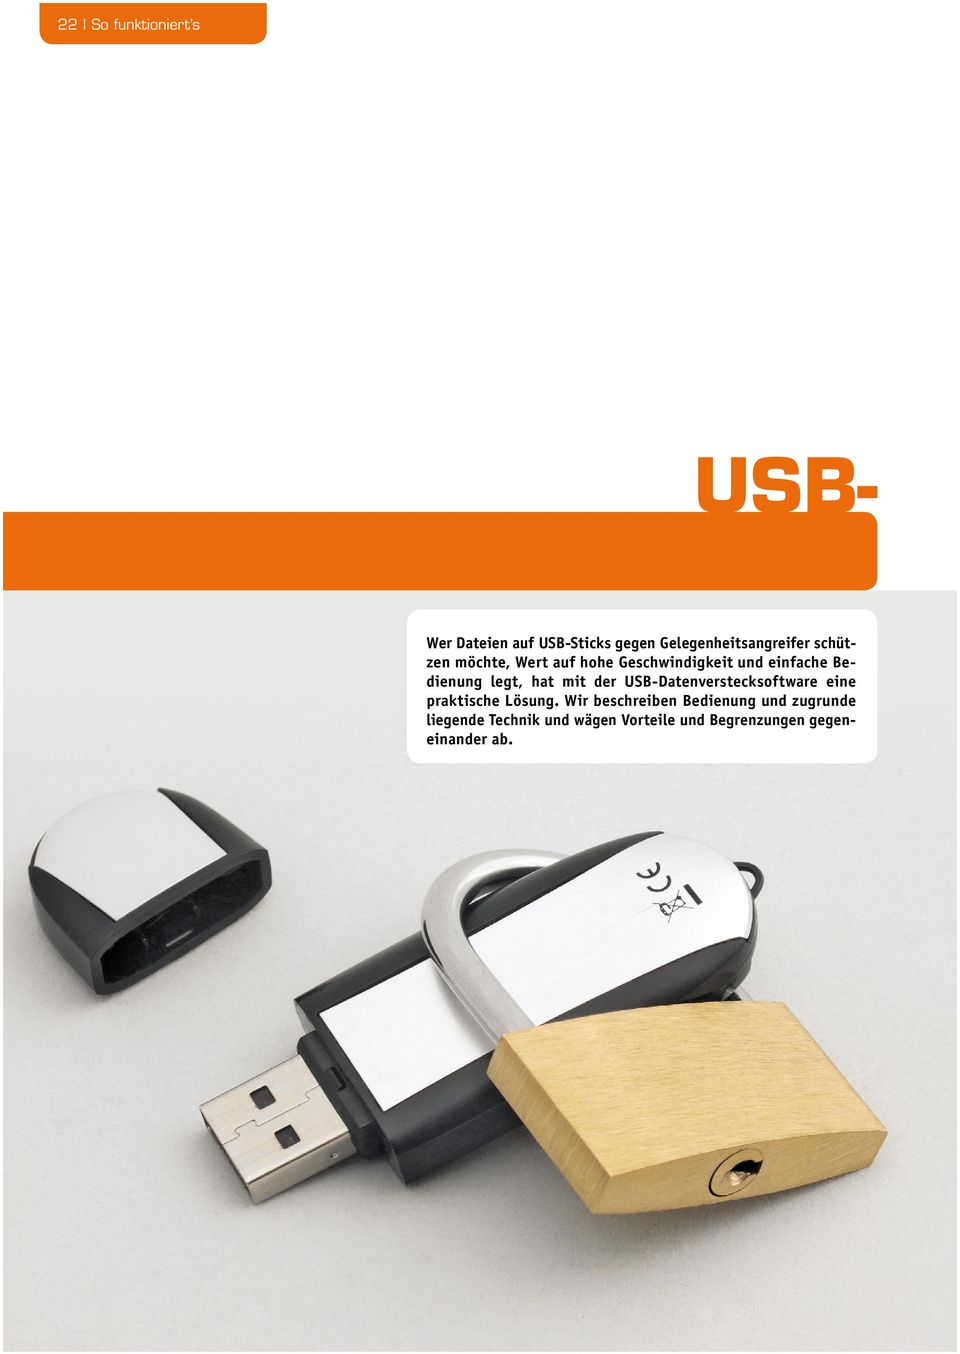 mit der USB-Datenverstecksoftware eine praktische Lösung.